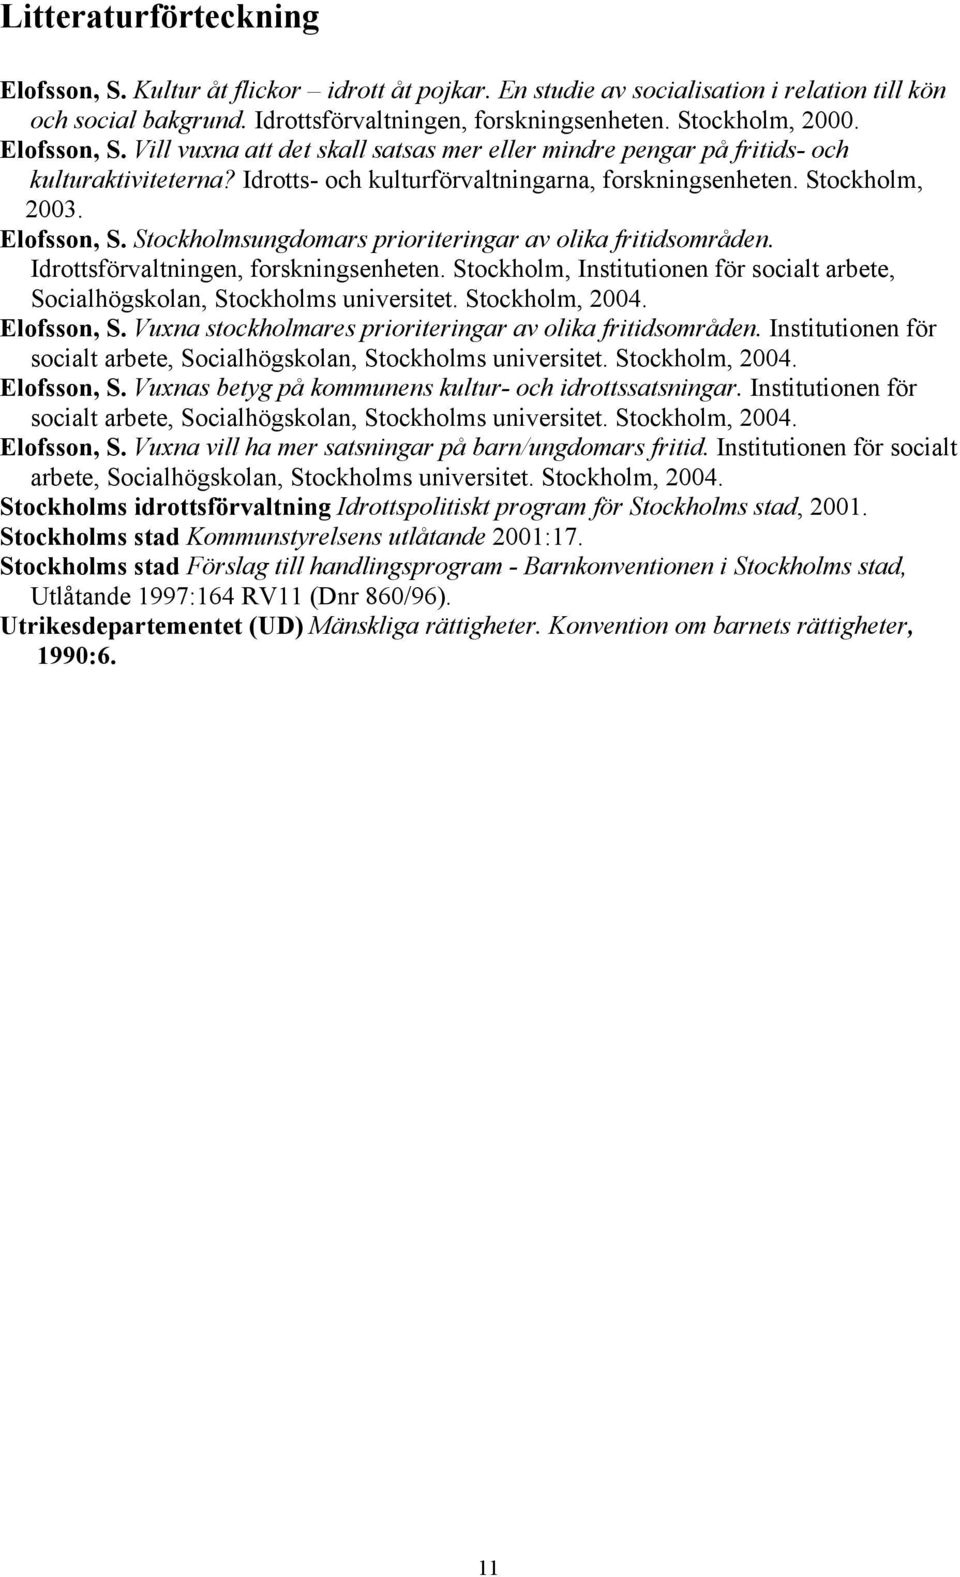 Stockholmsungdomars prioriteringar av olika fritidsområden. Idrottsförvaltningen, forskningsenheten. Stockholm, Institutionen för socialt arbete, Socialhögskolan, Stockholms universitet.